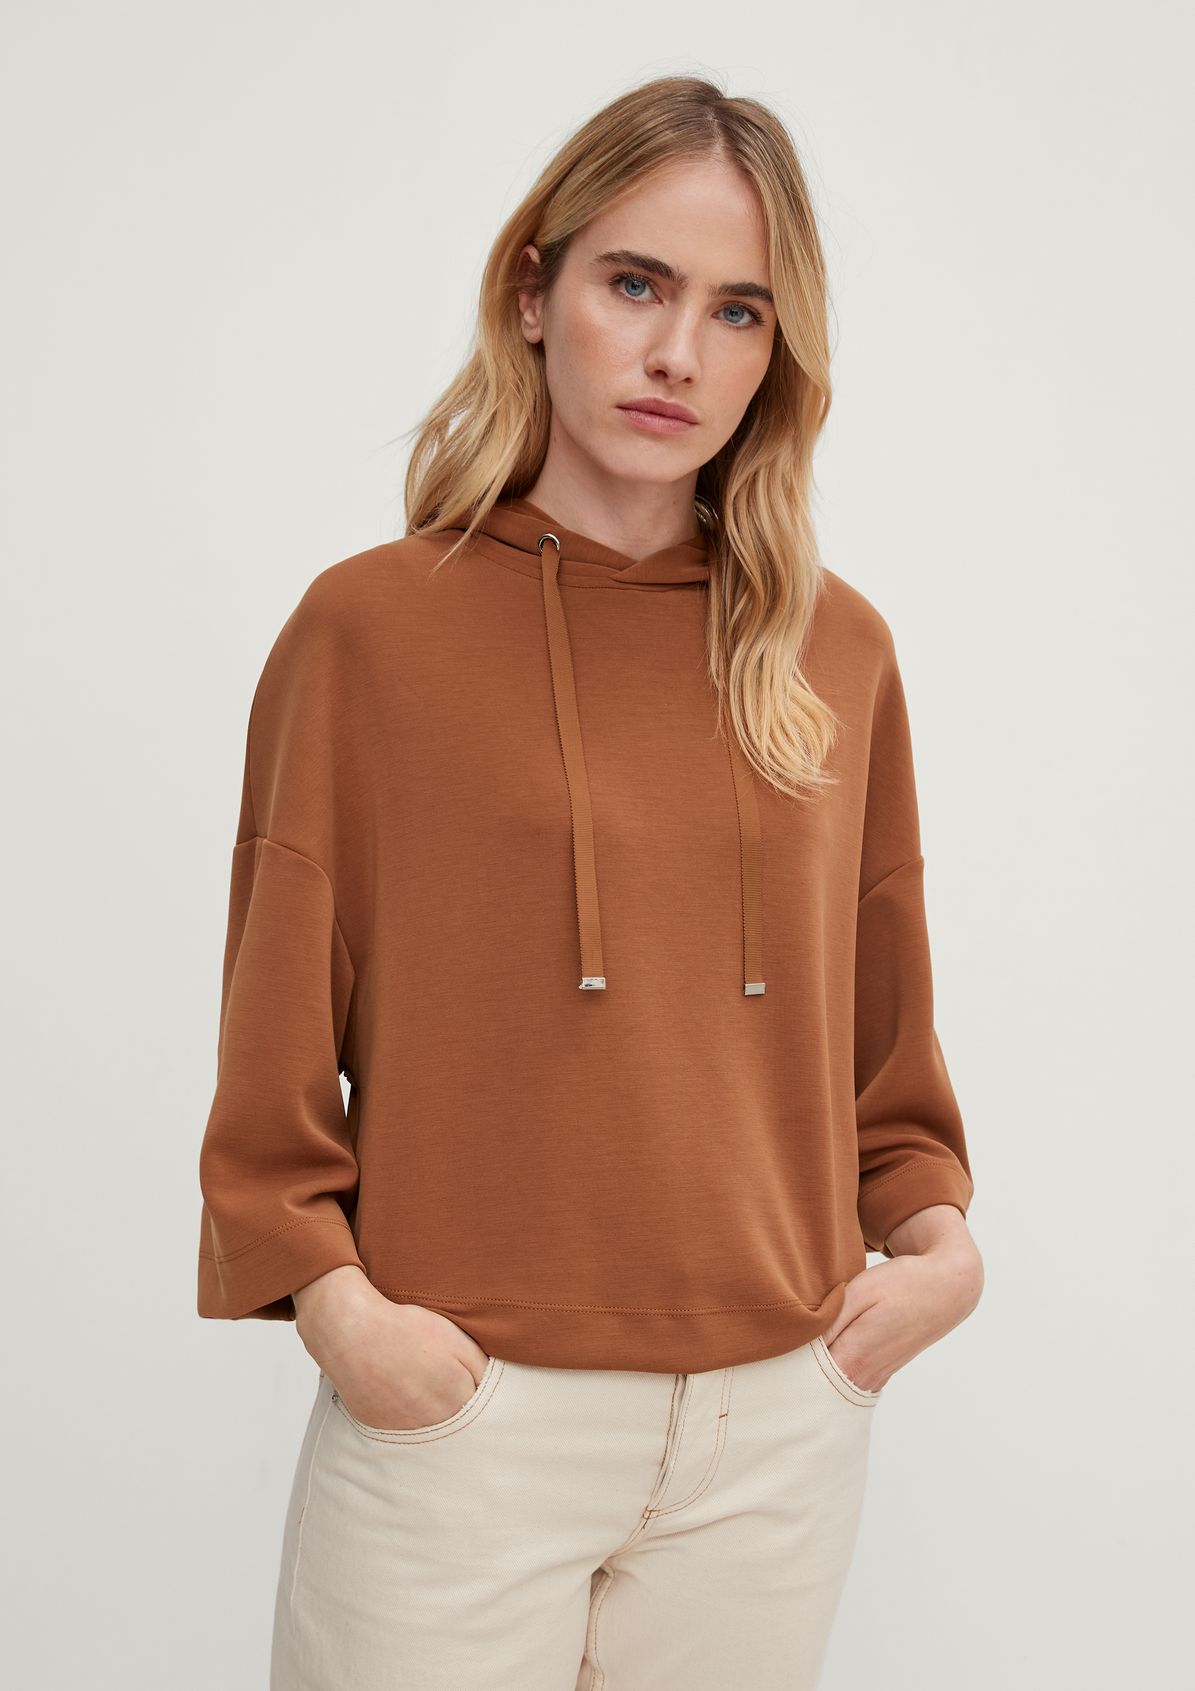 Modal blend sweatshirt from comma